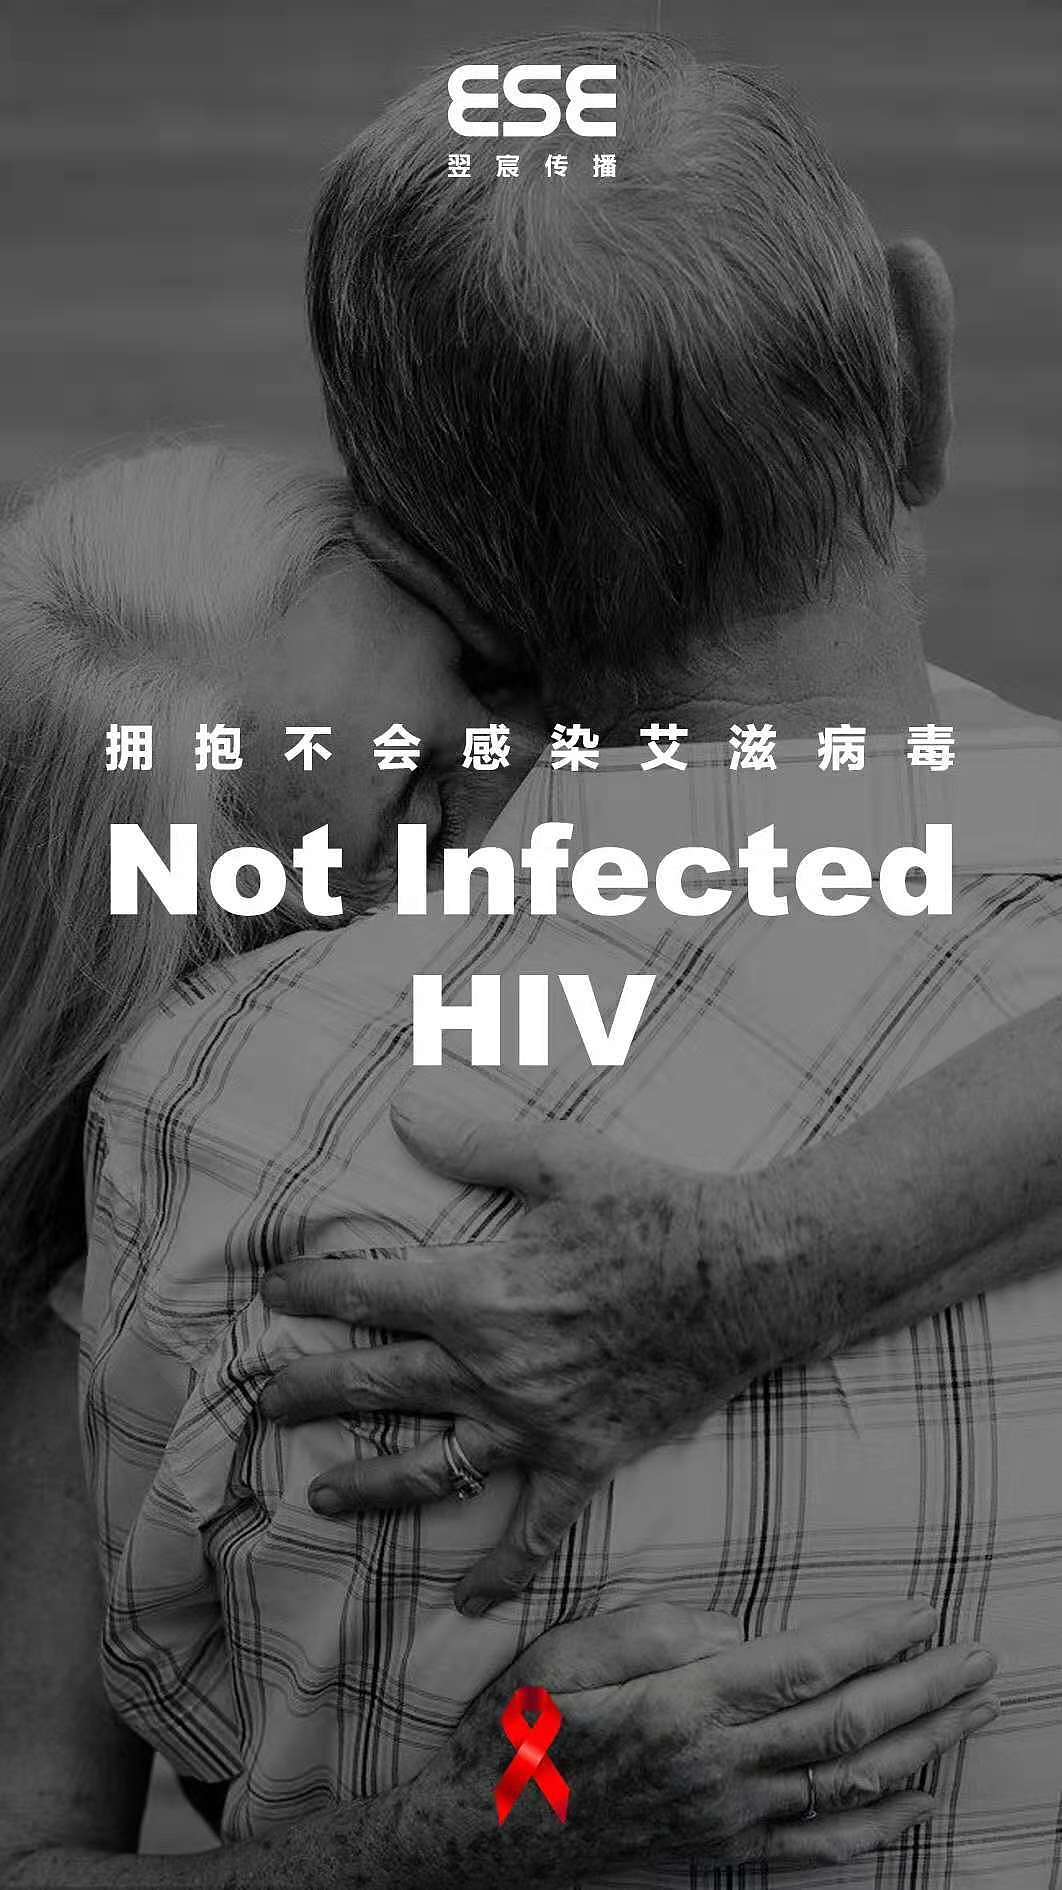 携手防疫抗艾 学校开展艾滋病性病系列宣传活动-华东交通大学新闻网